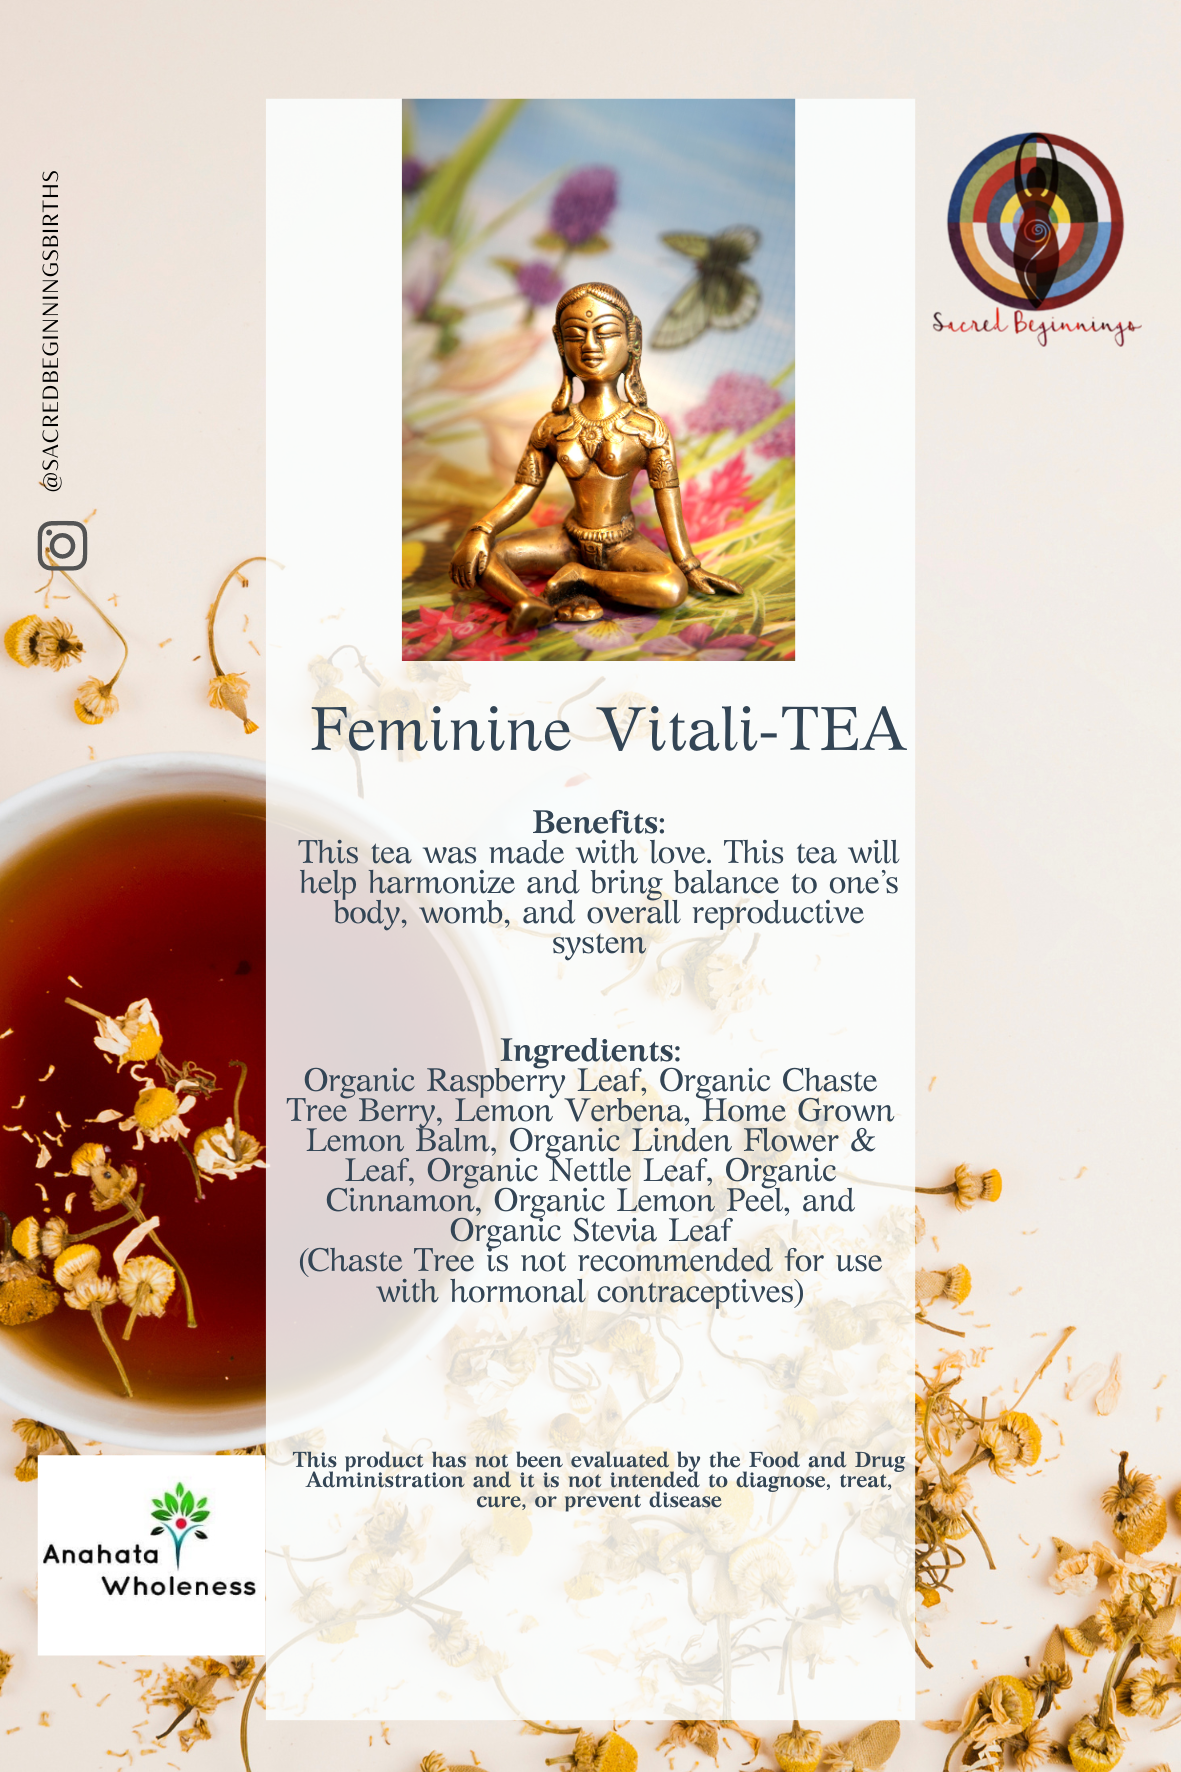 Feminine Vitality-TEA